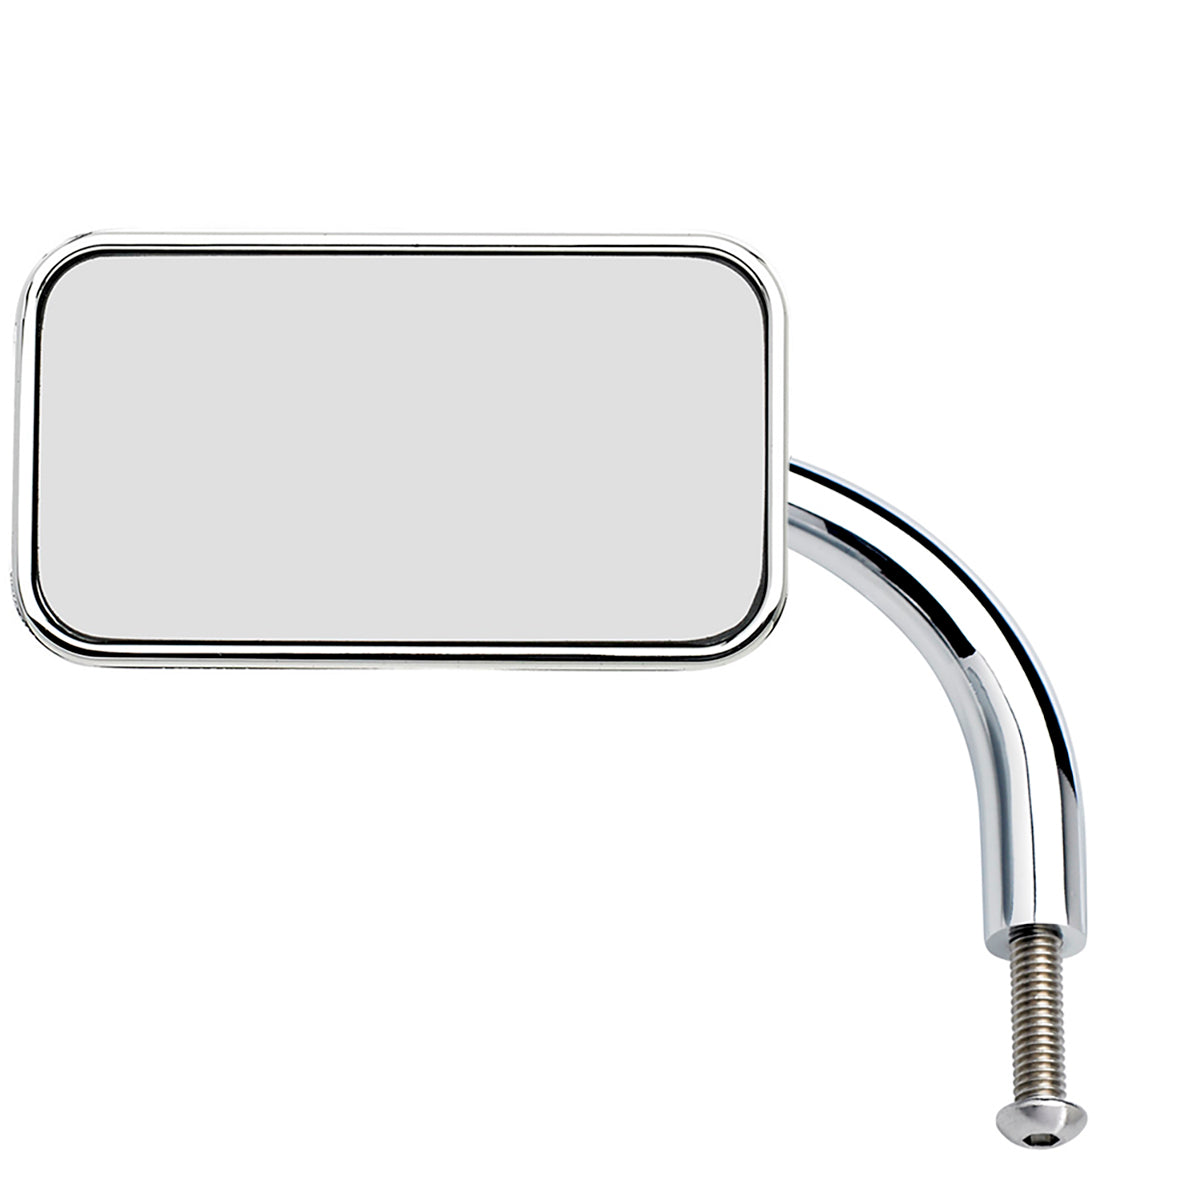 Utility Mirror Rectangle Perch Mount - Chrome